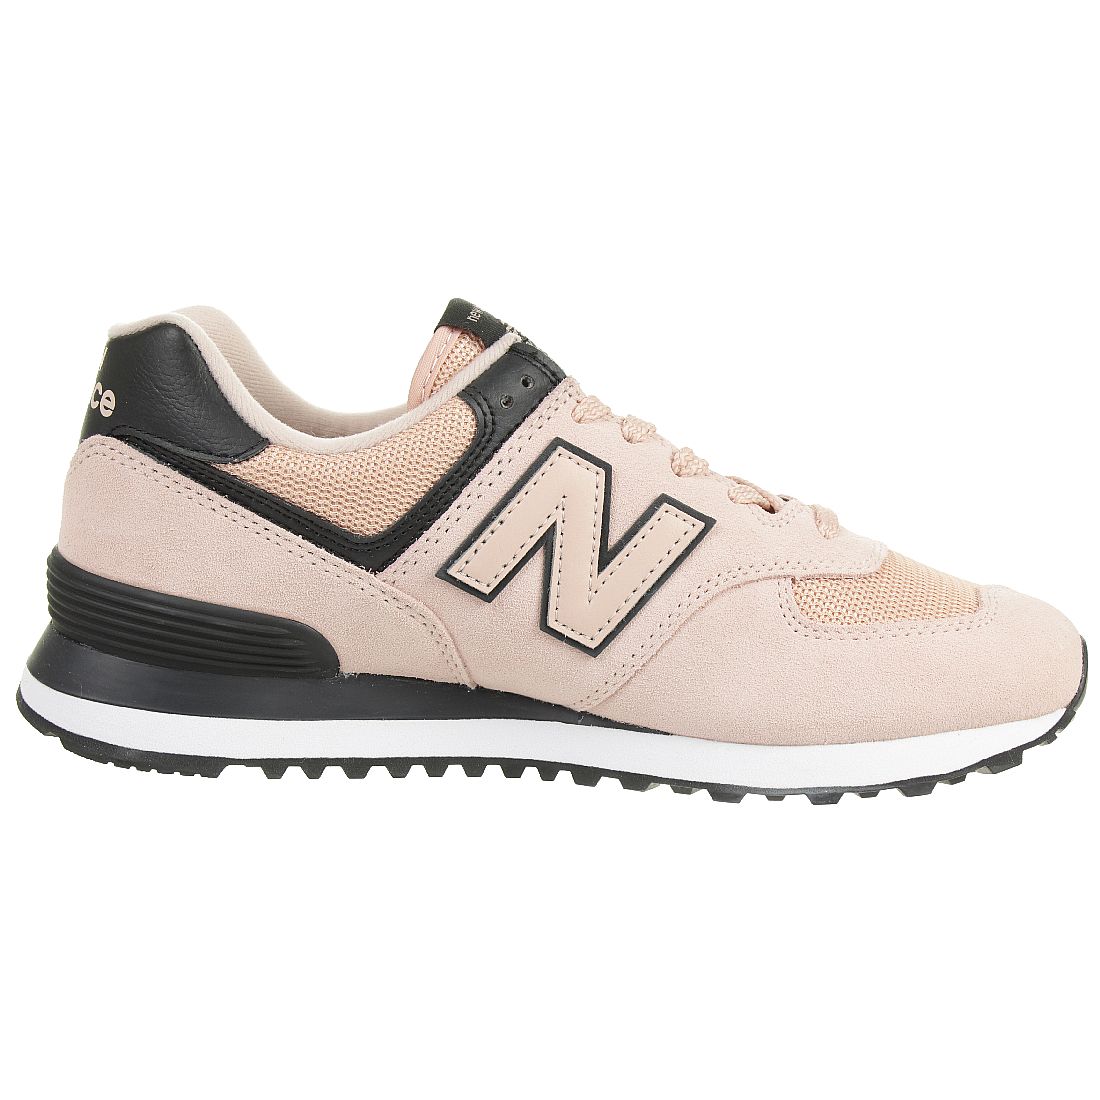 New Balance WL574 WEG Classic Sneaker Damen Schuhe pink 